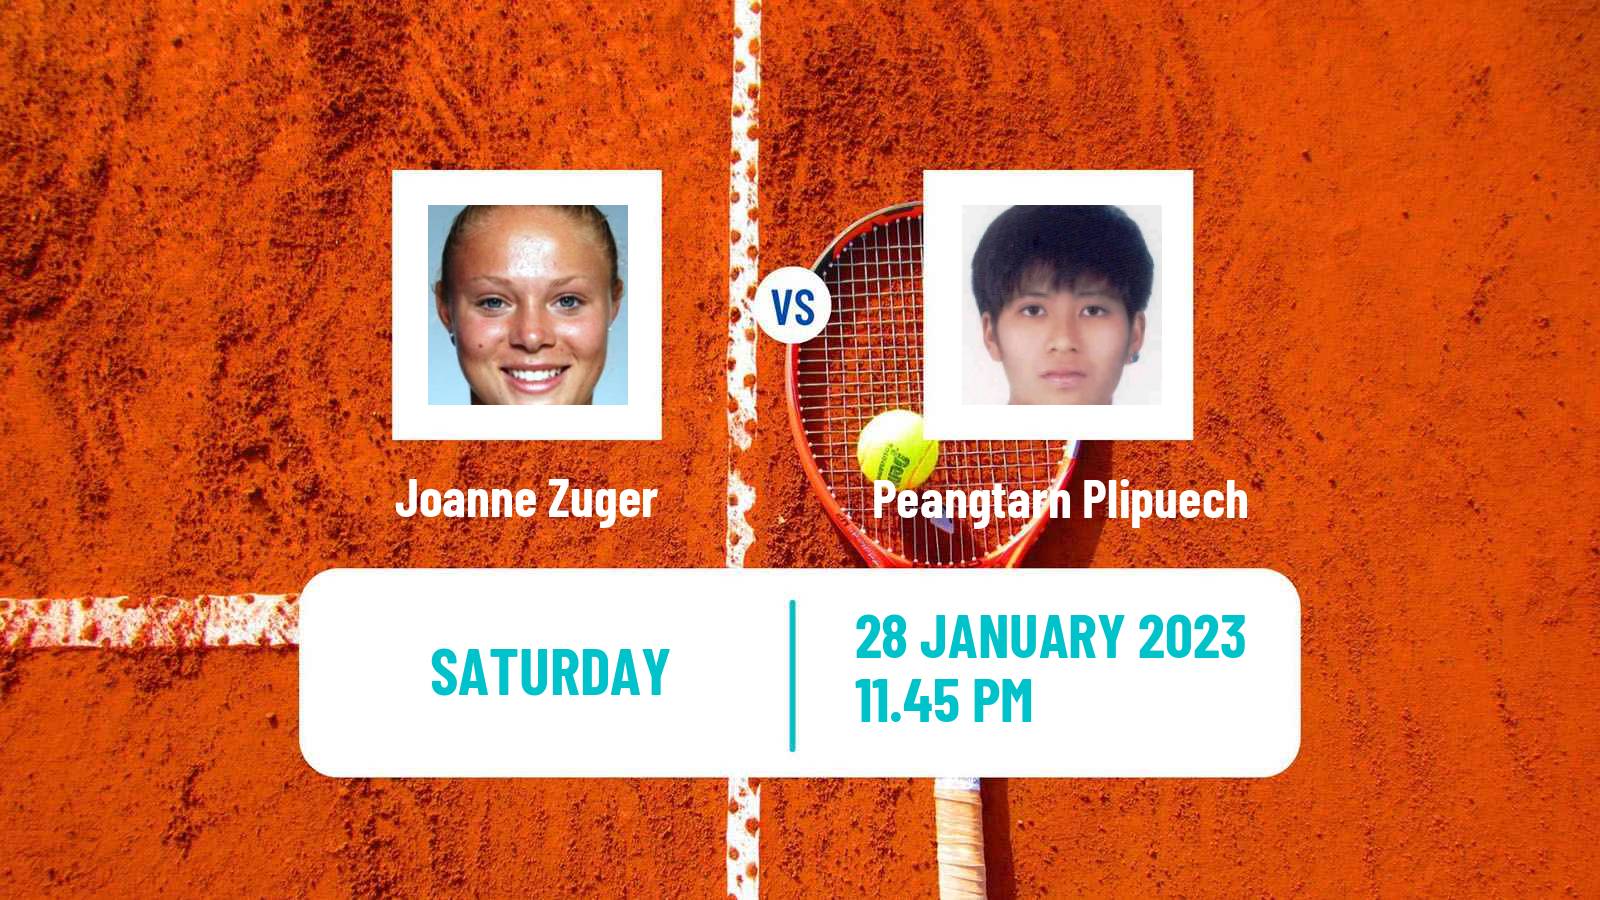 Tennis WTA Hua Hin Joanne Zuger - Peangtarn Plipuech